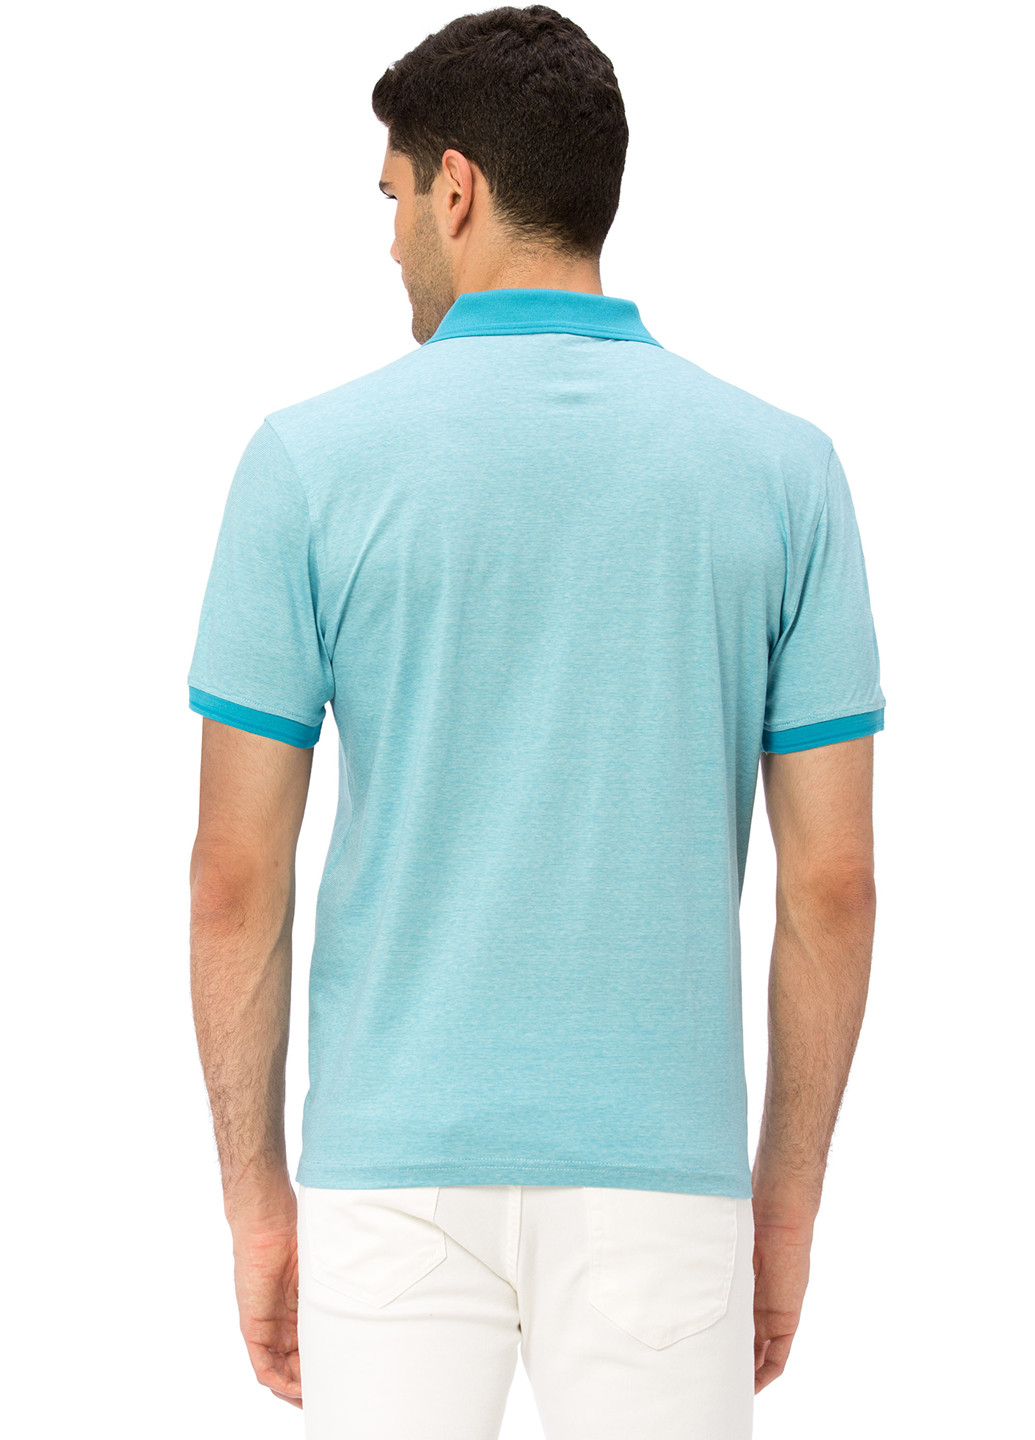 Голубой футболка-поло для мужчин LC Waikiki однотонная